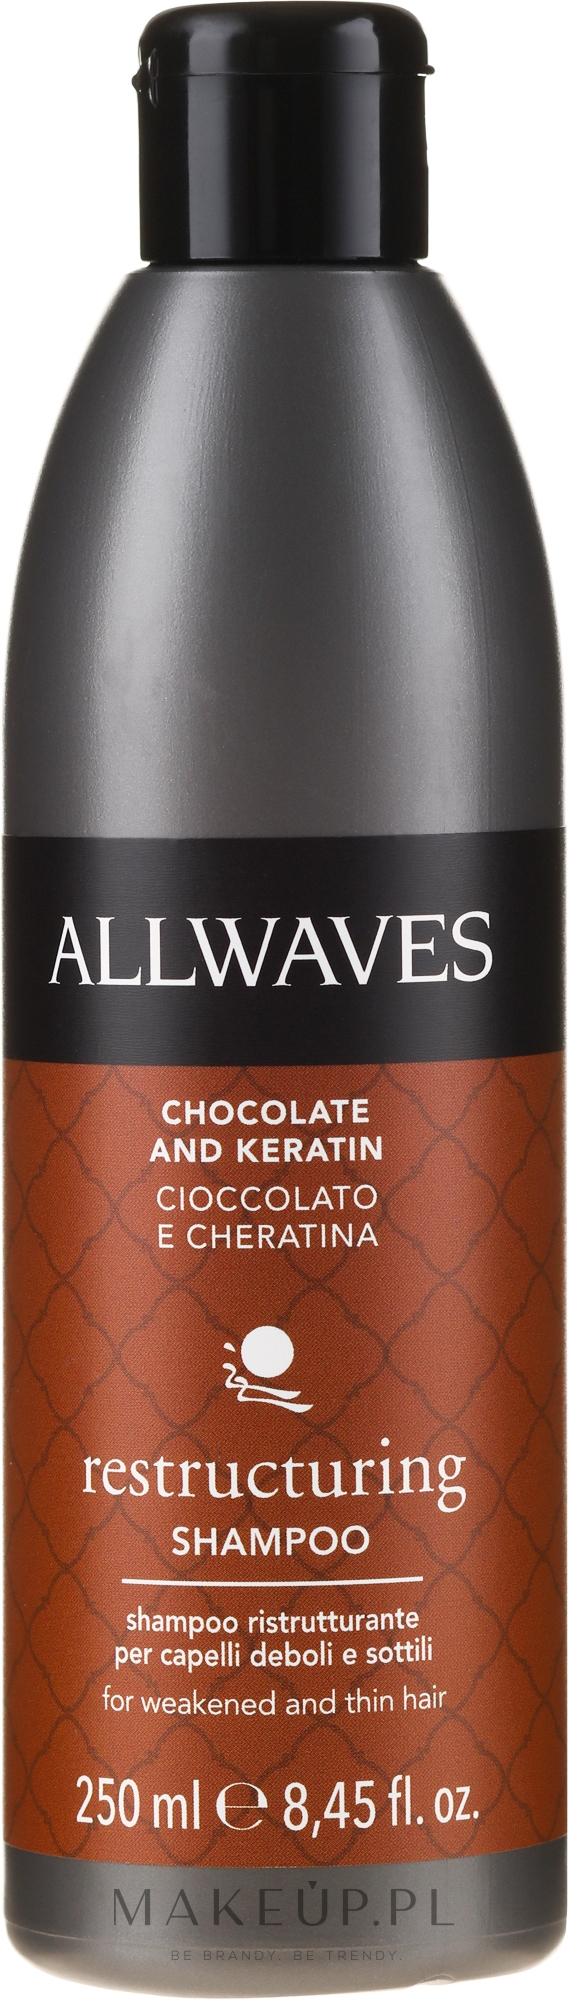 szampon alwaves czekoladowy wizaz